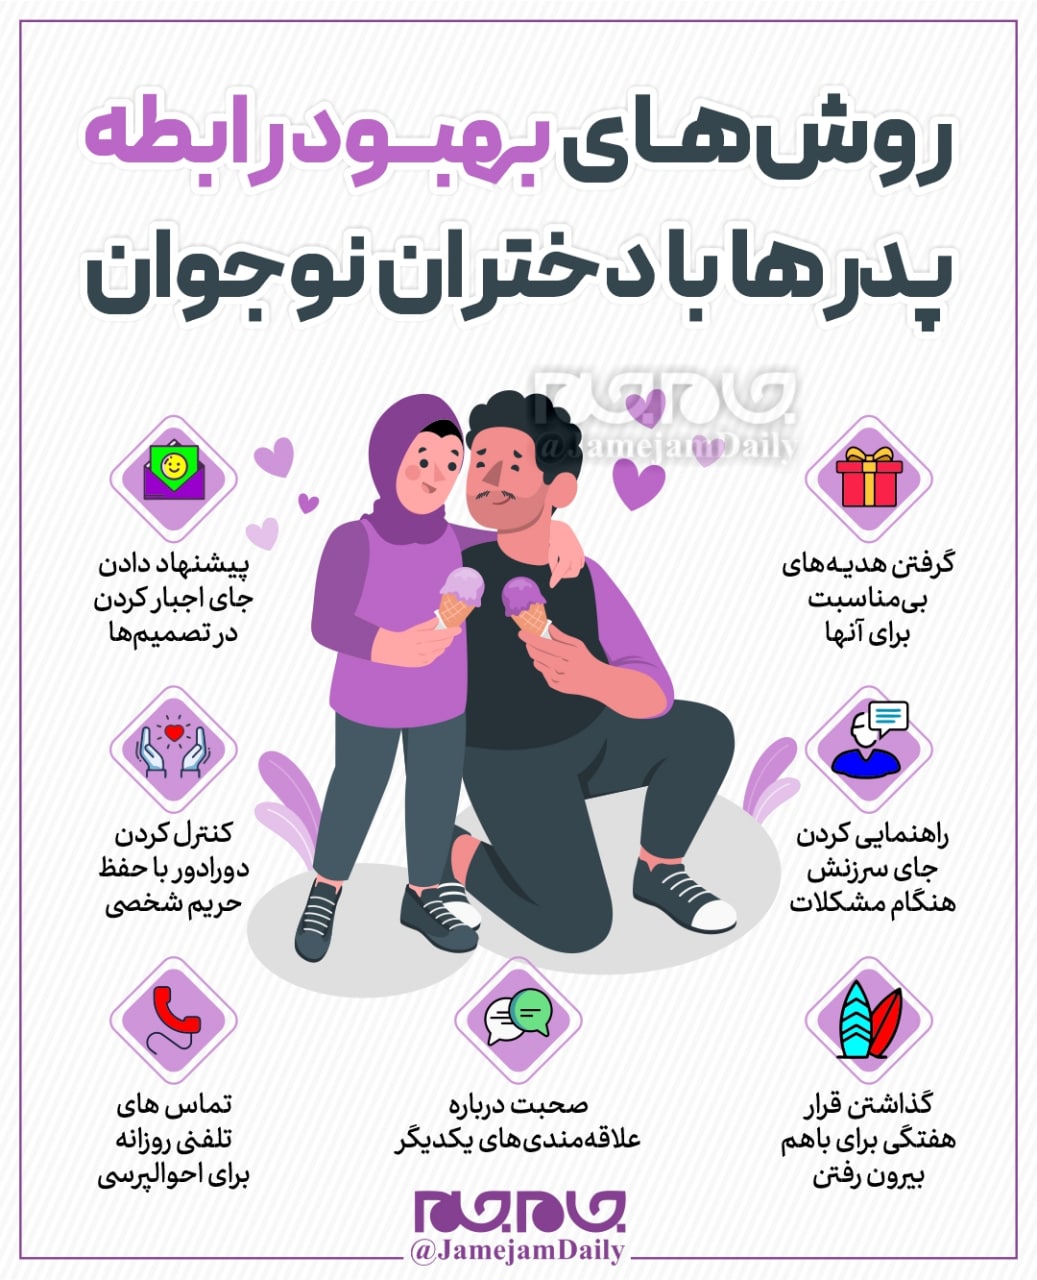 روش های بهبود رابطه پدرها با دختران نوجوان/اینفوگرافیک - تلگرام آپ